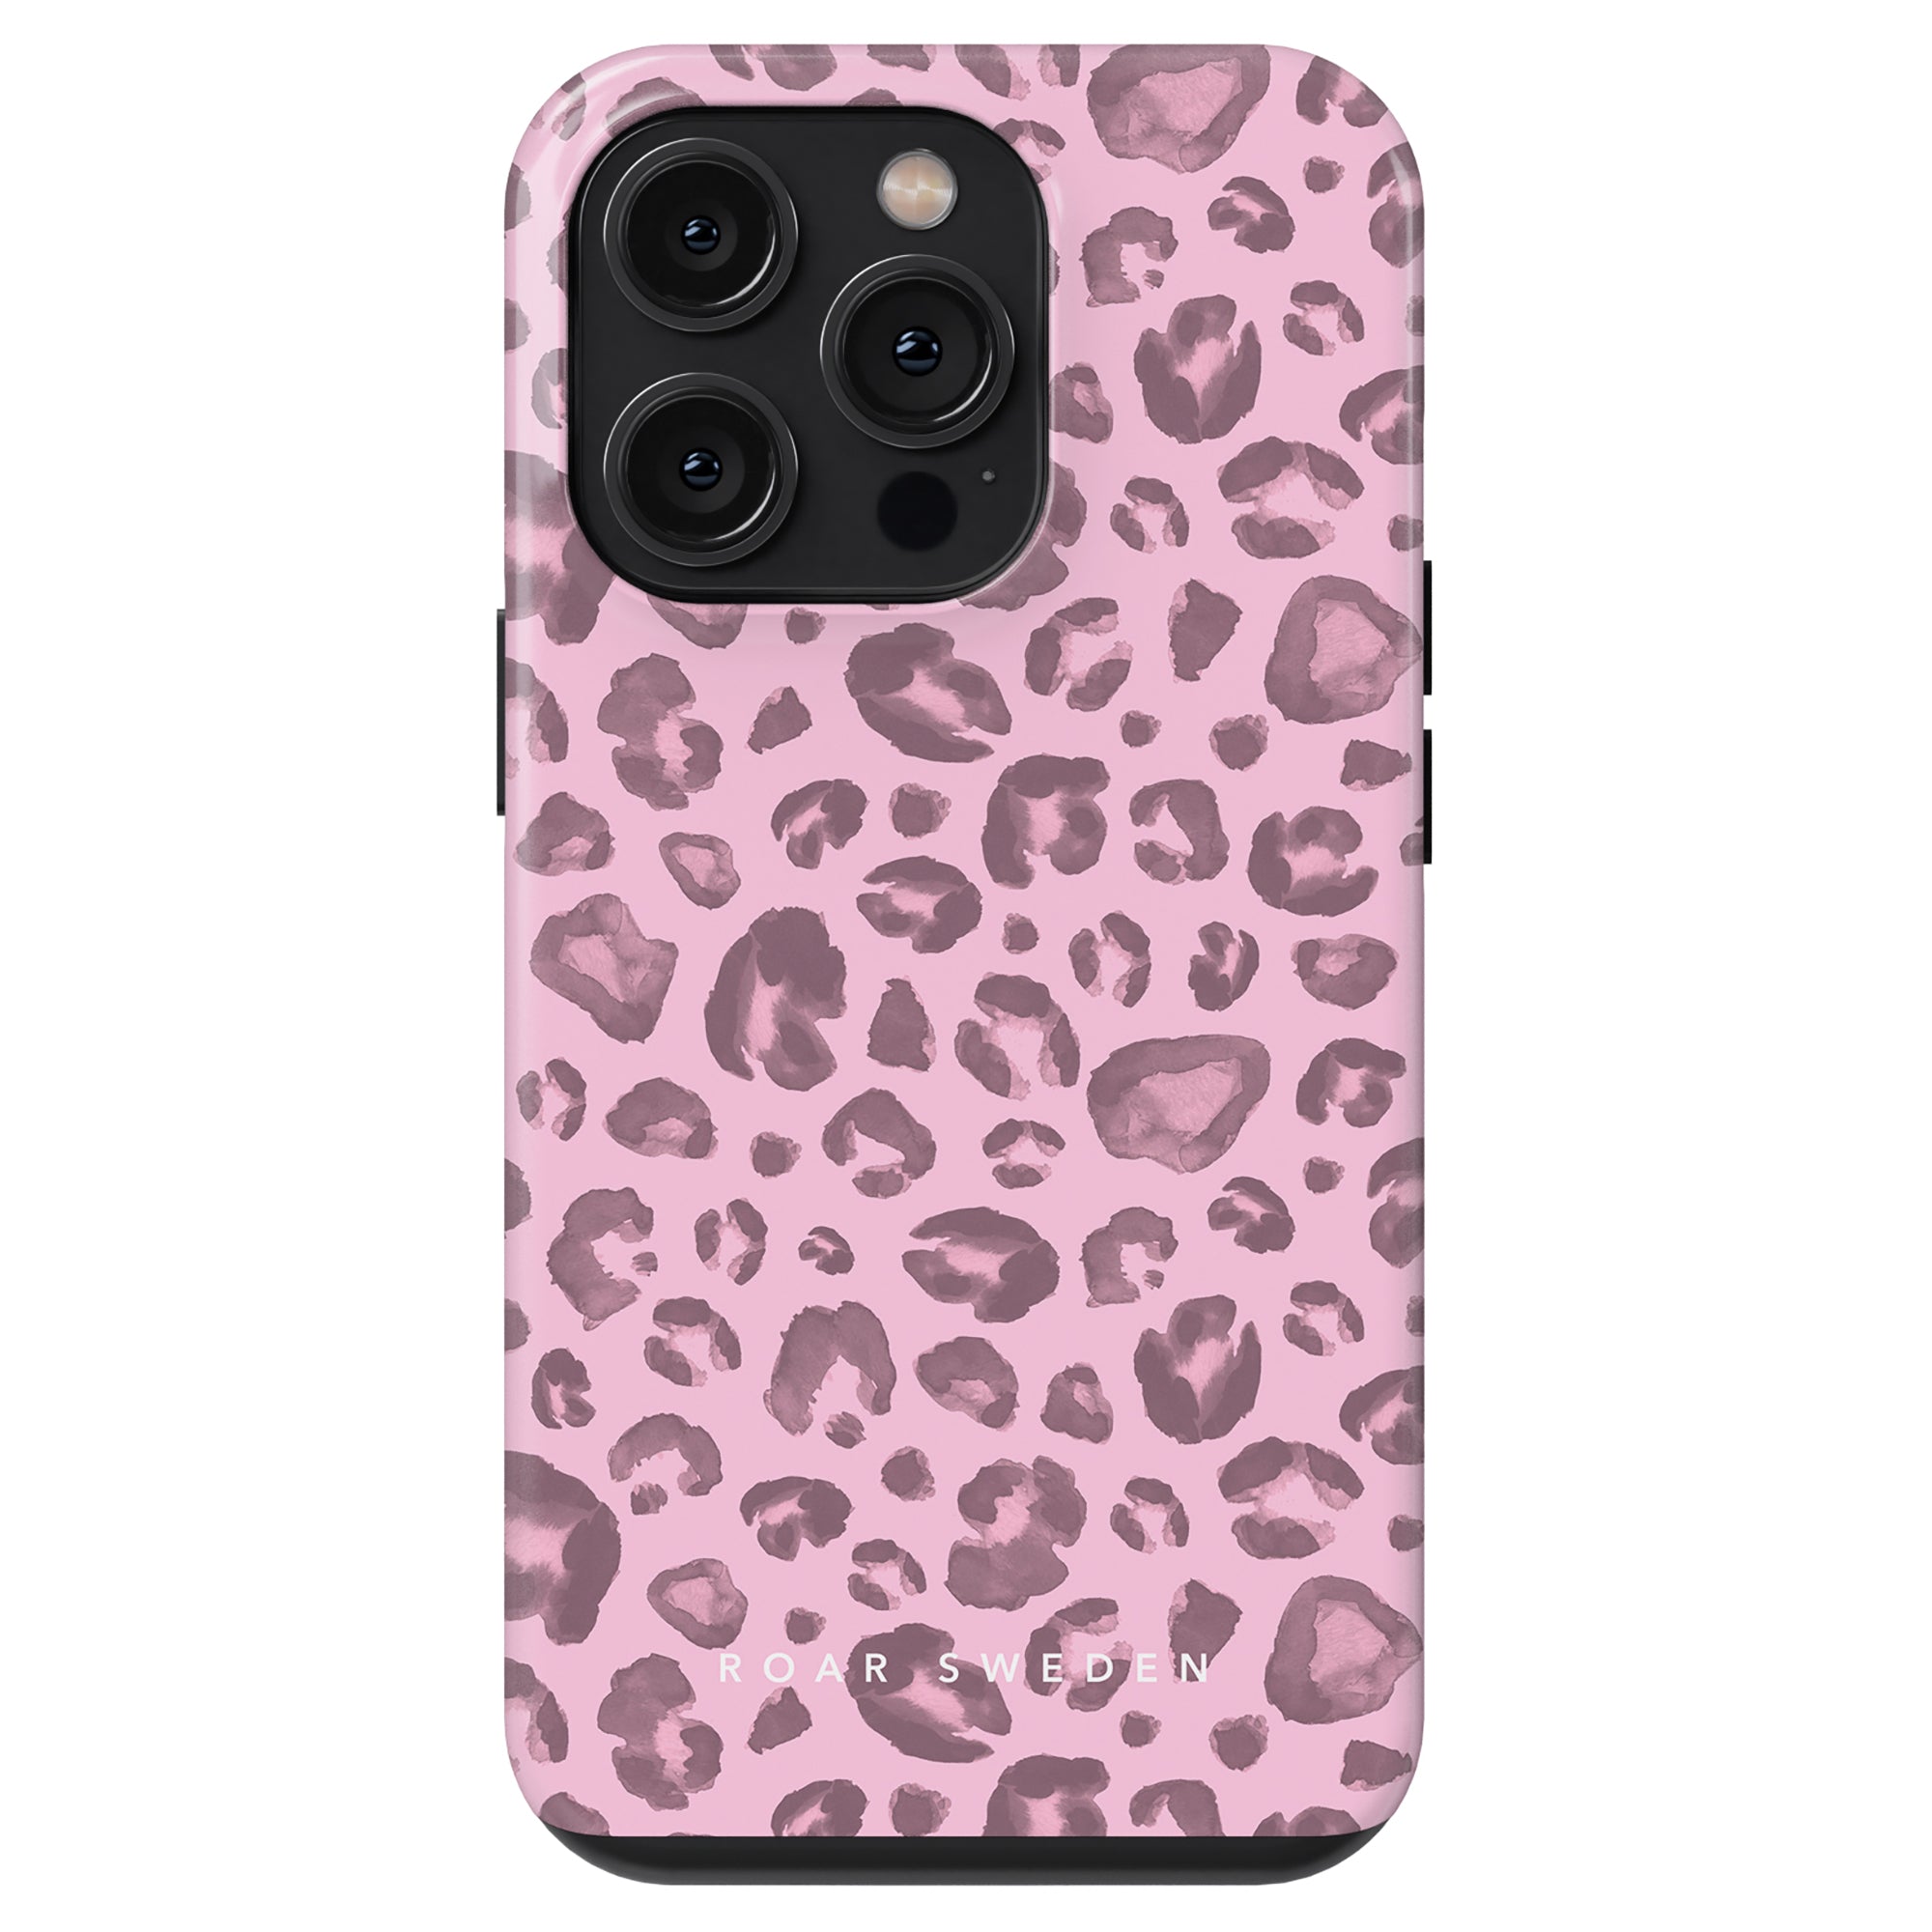 A Pinky Spots - Tufft fodral för iPhone 11.